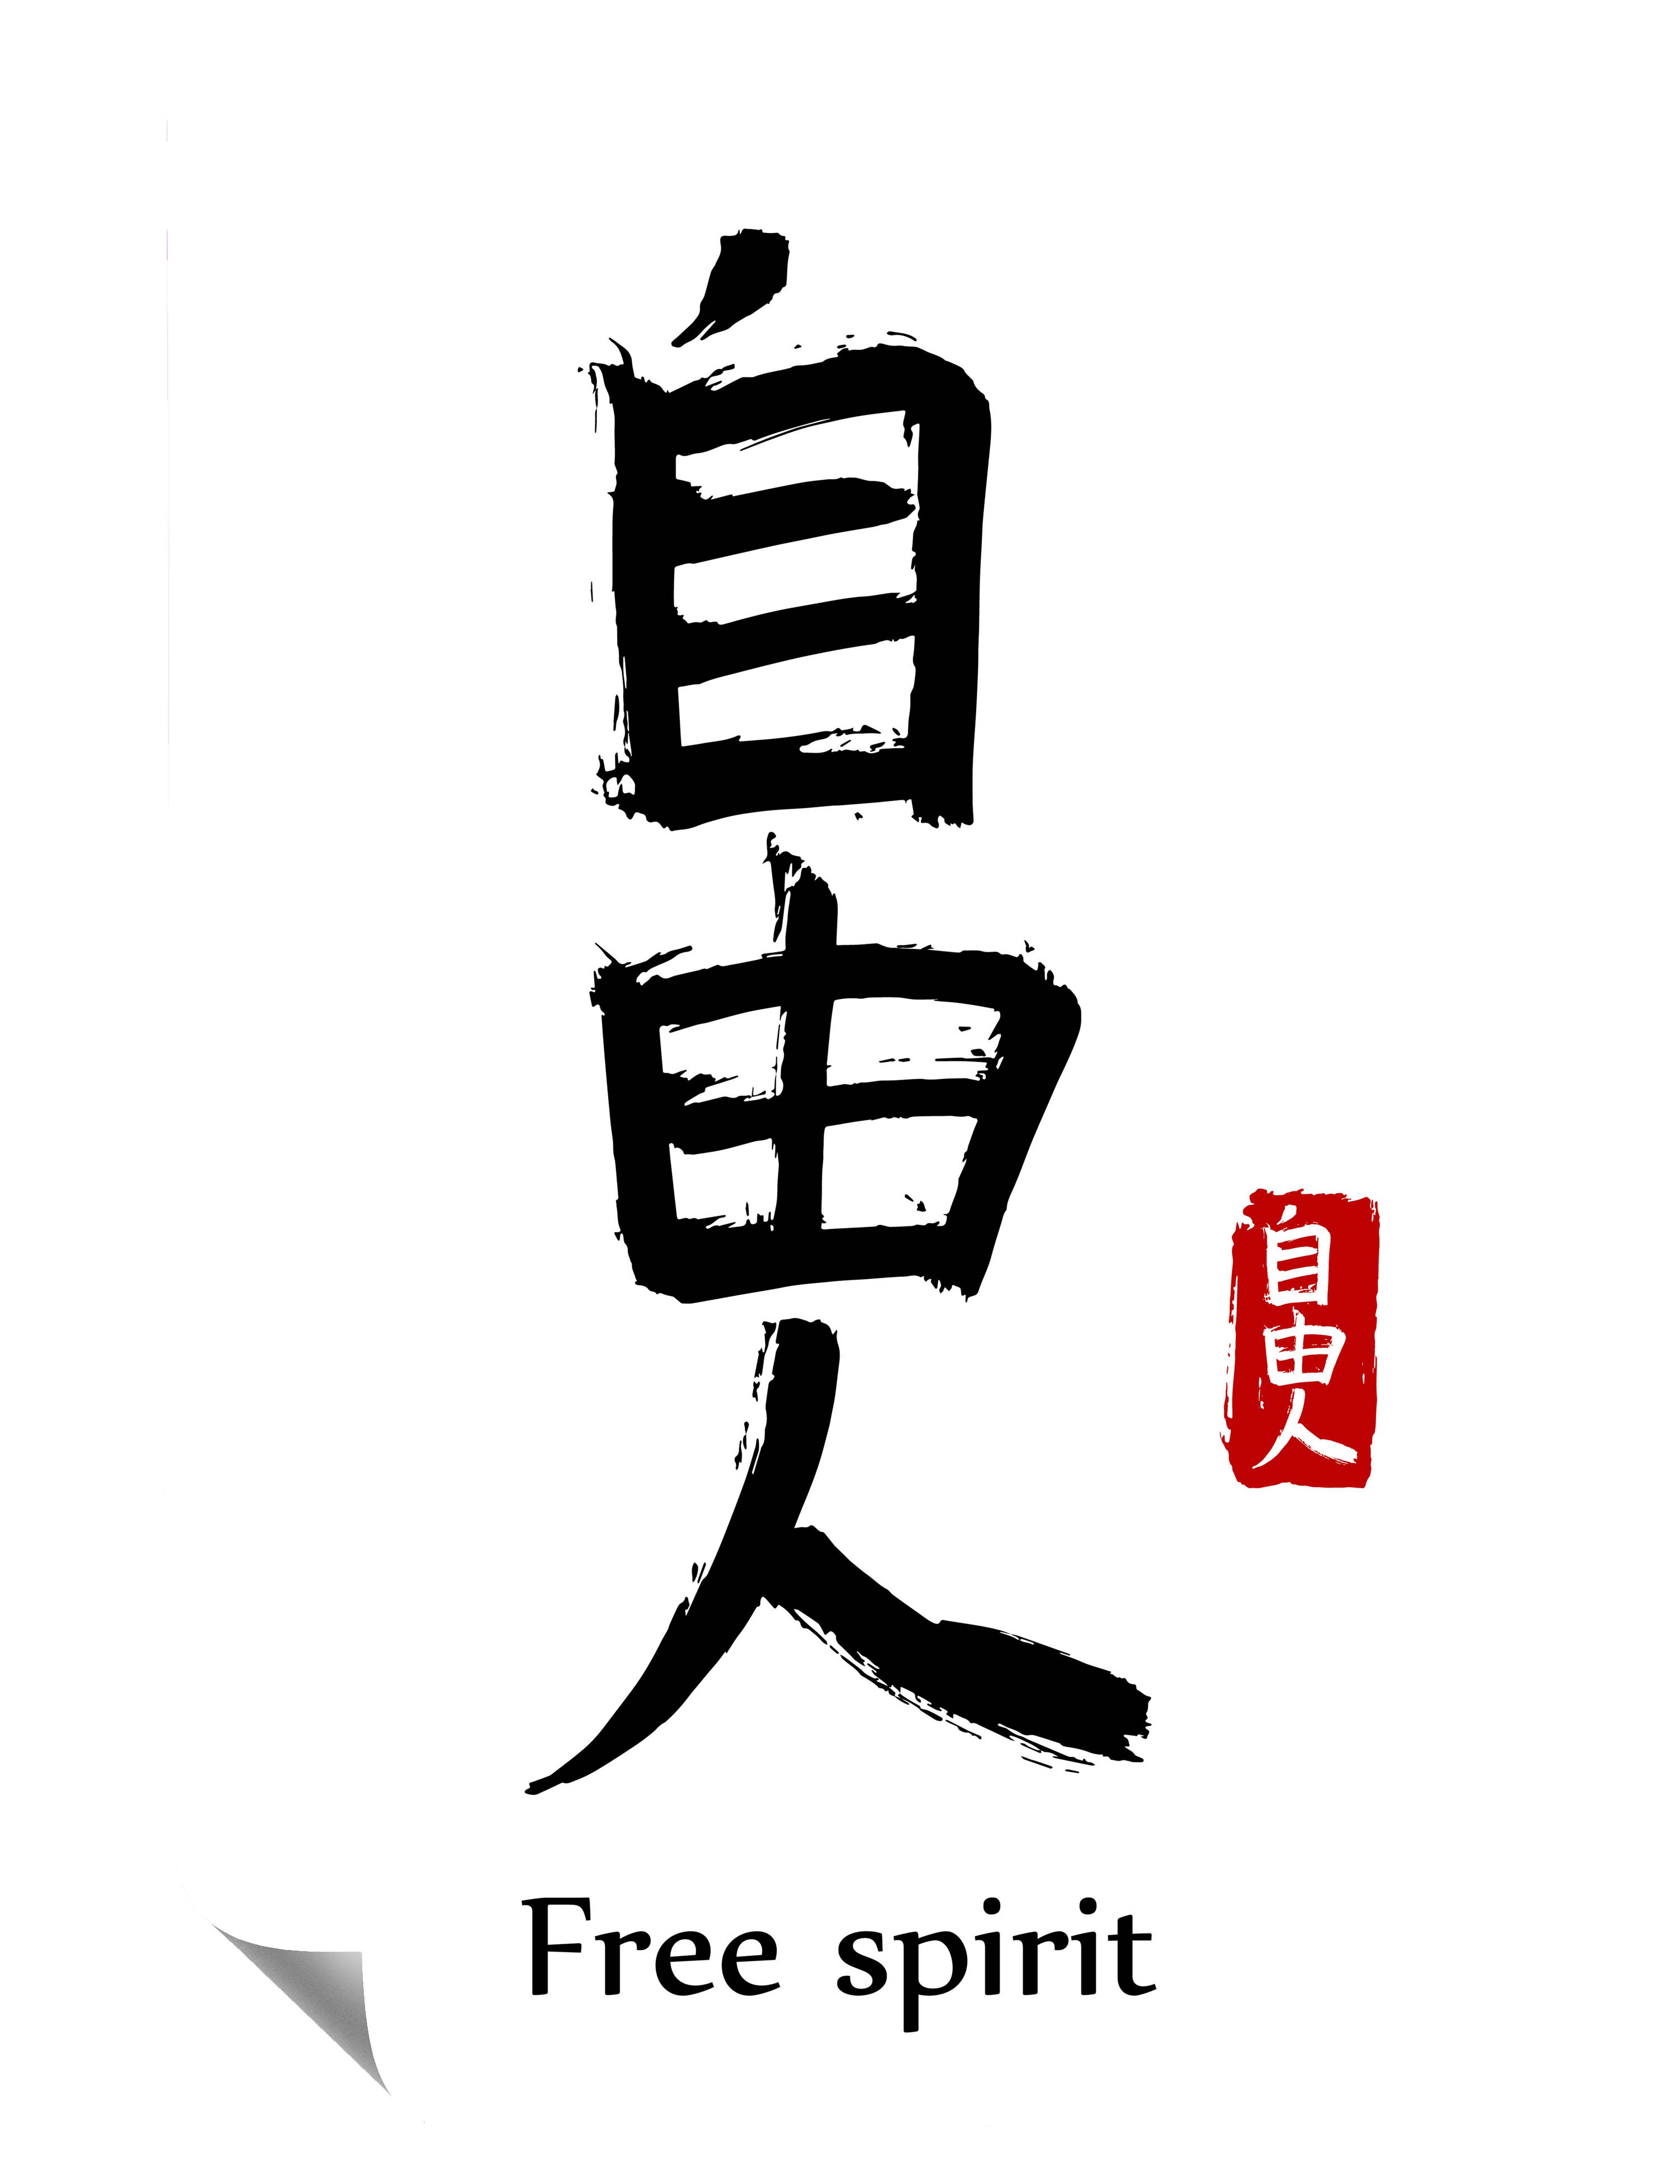 Asiatische Schriftzeichen Free Spirit Poster P0035